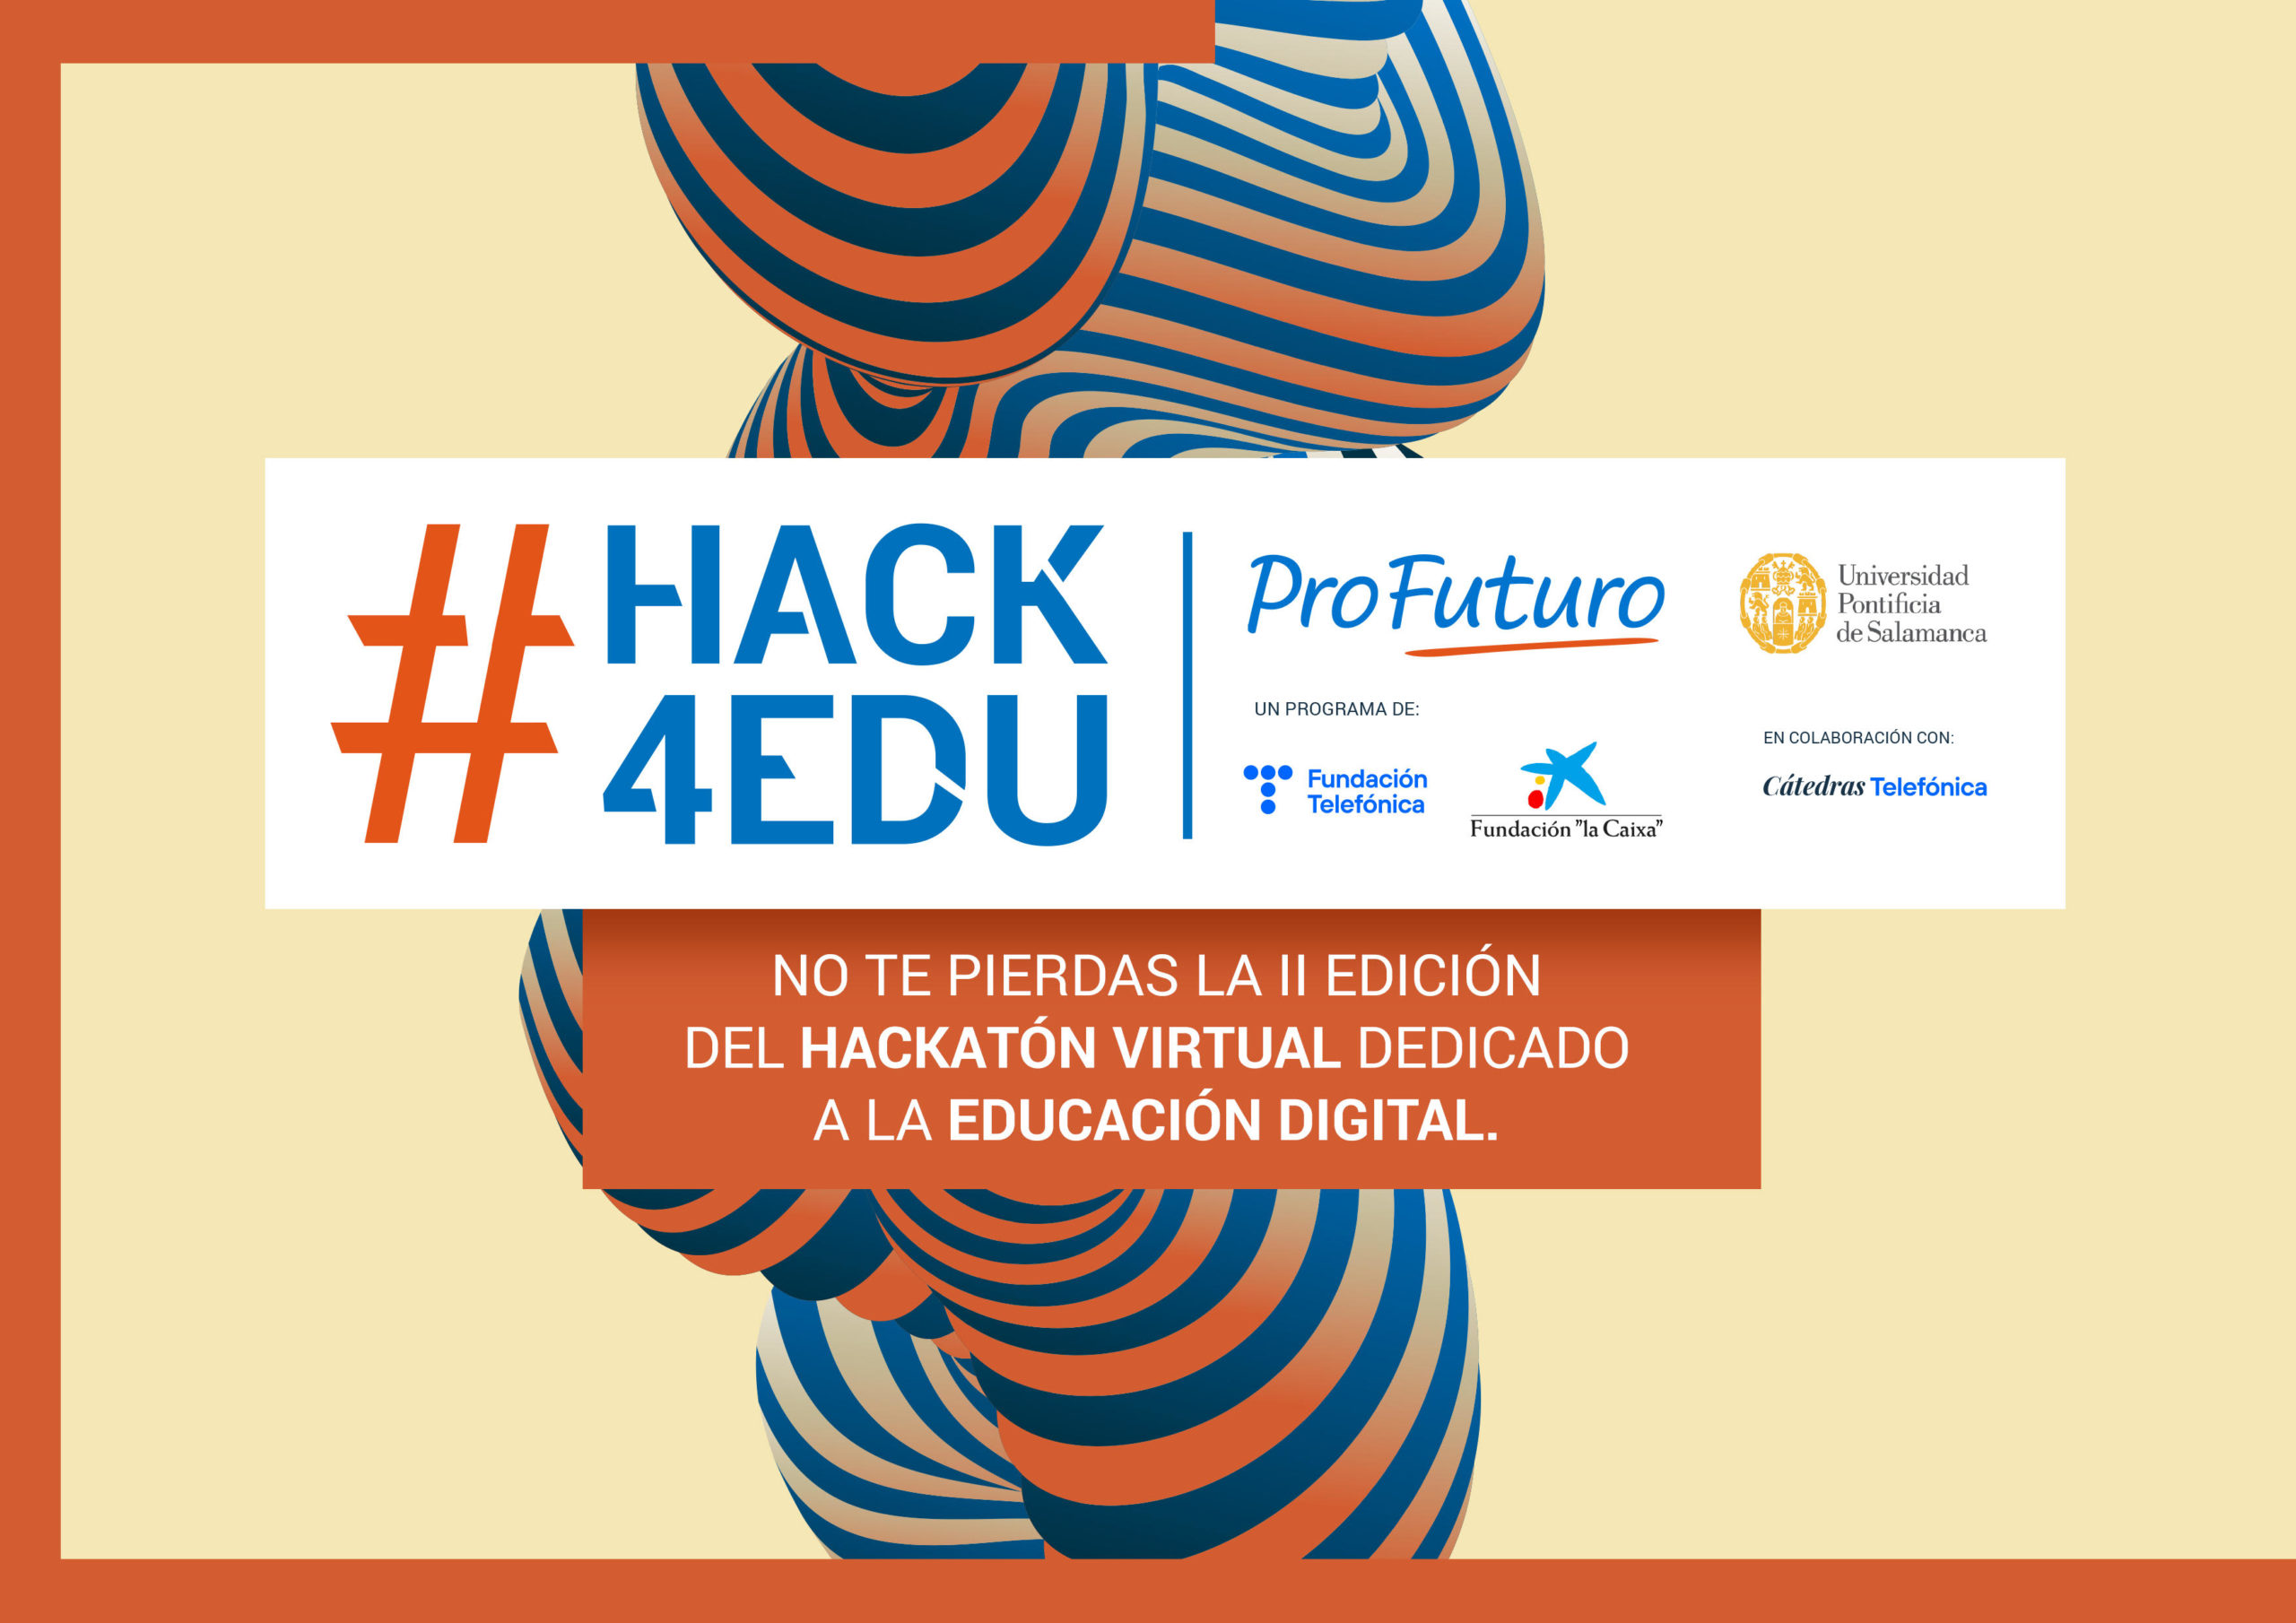 The 2nd #hack4edu hackathon devoted to digital education is coming soon